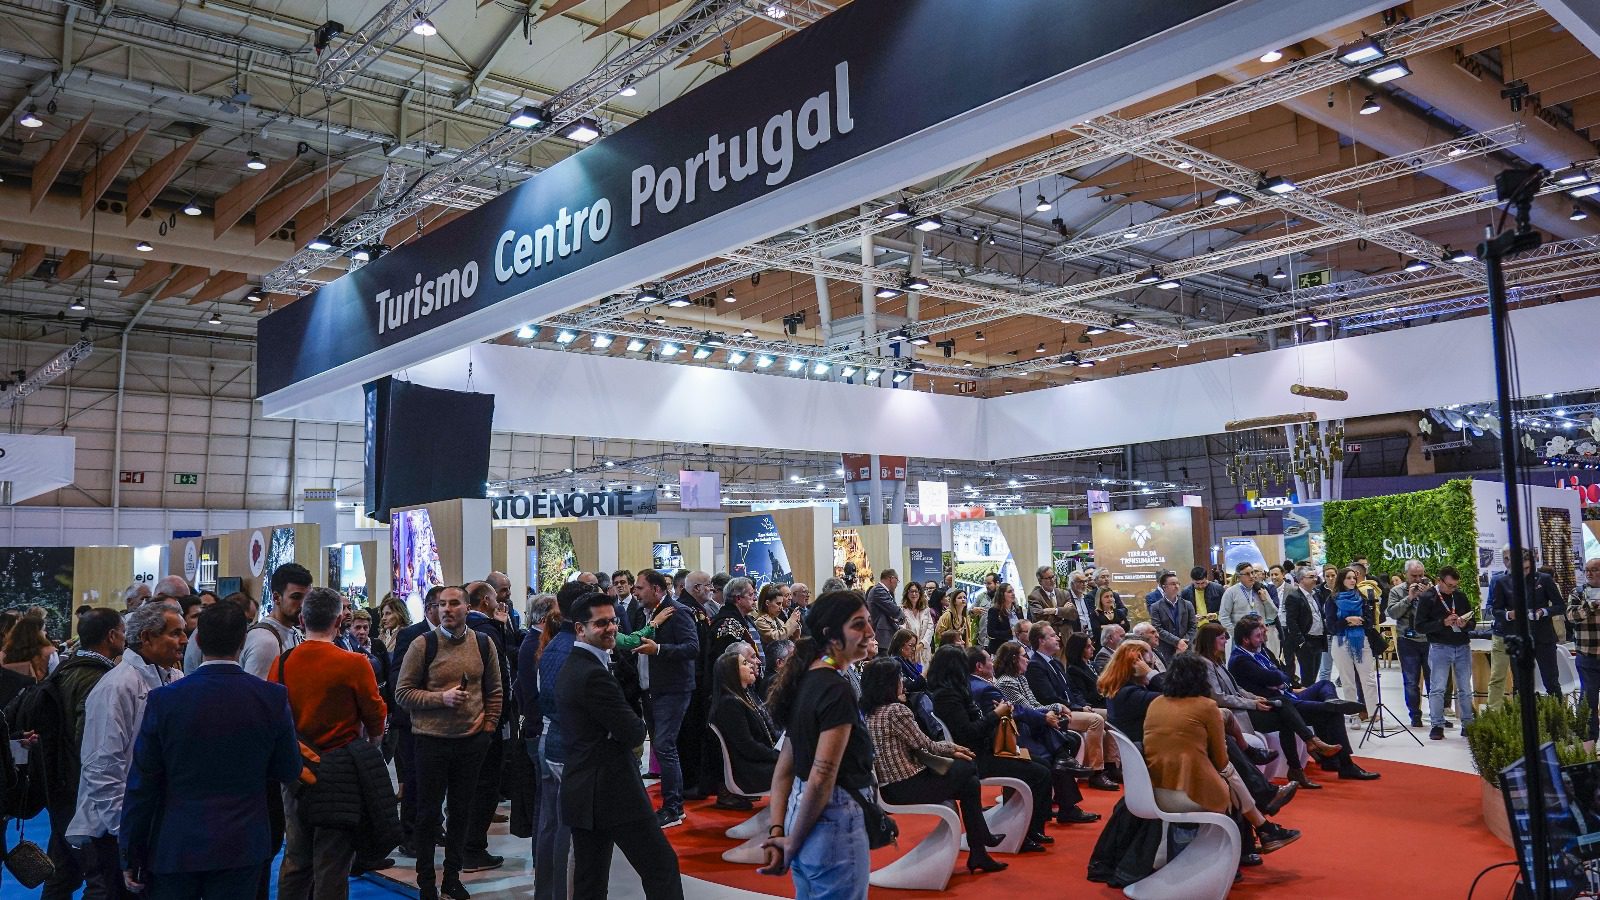 Centro de Portugal apresentou projetos turísticos estruturantes para a região